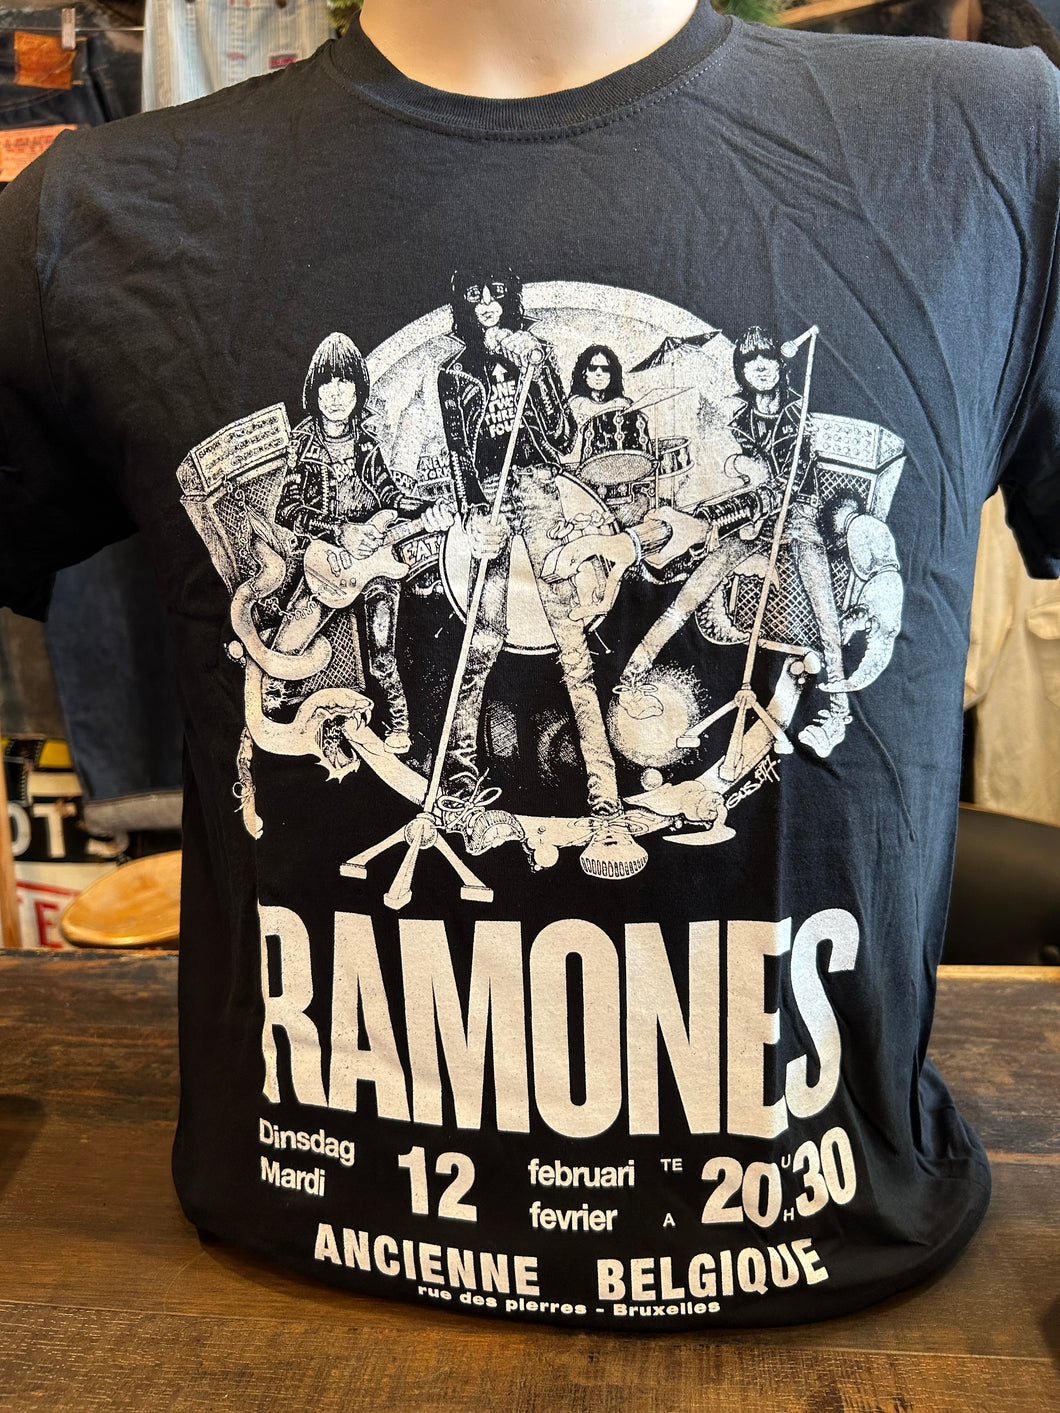 Ramones Belgique